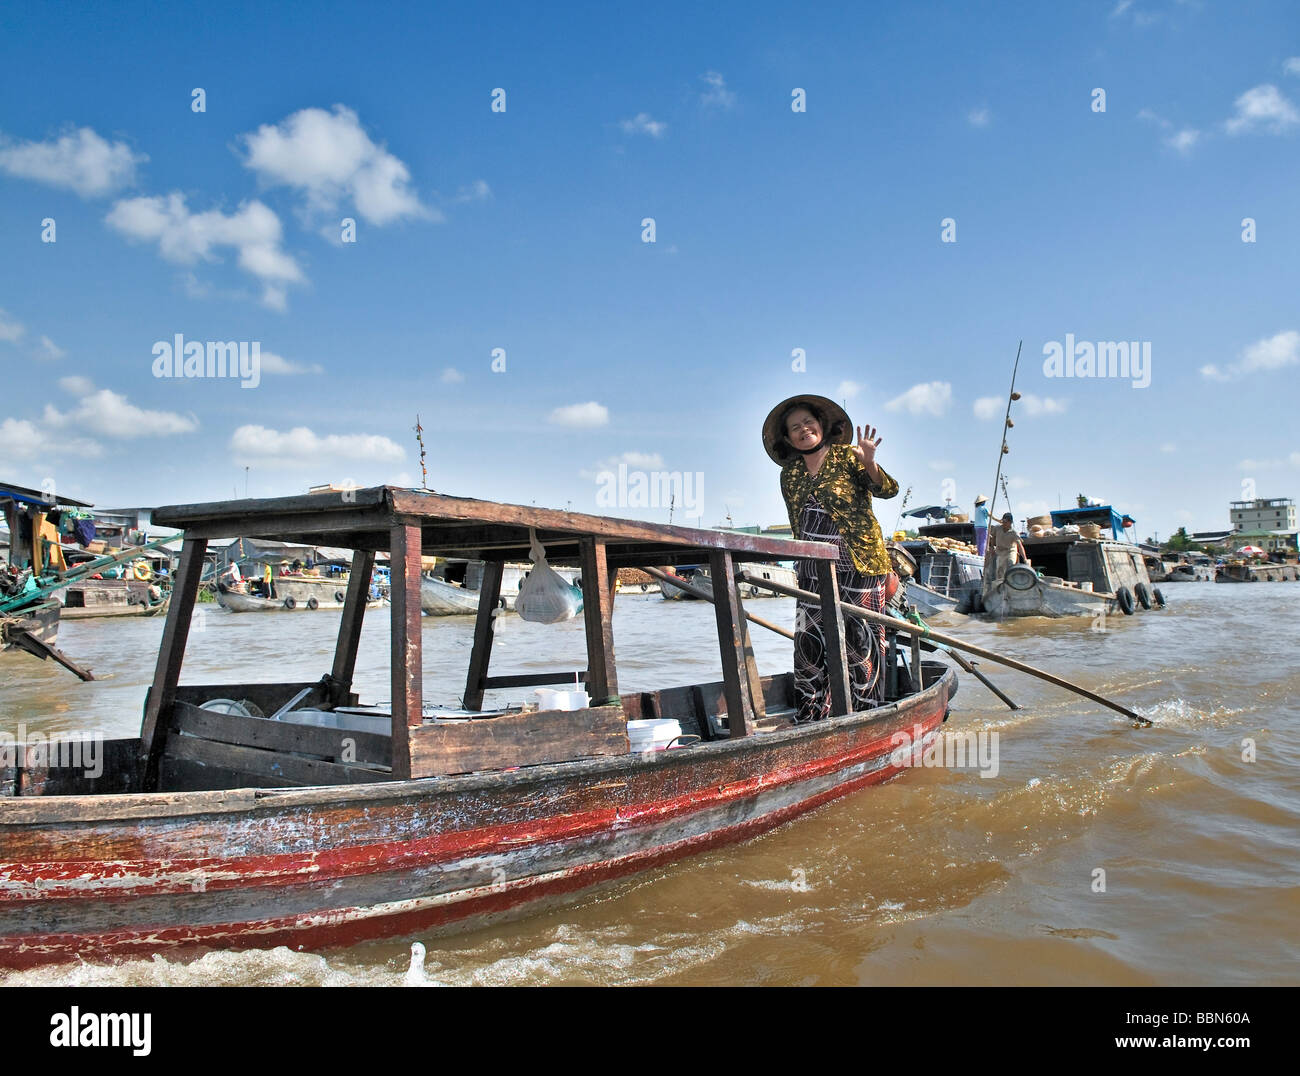 Donna con cappello tradizionale a forma di cono hat fatte di foglie di palma, permanente e la barca a remi di una barca di legno sul Mekong, Delta del Mekong, Foto Stock